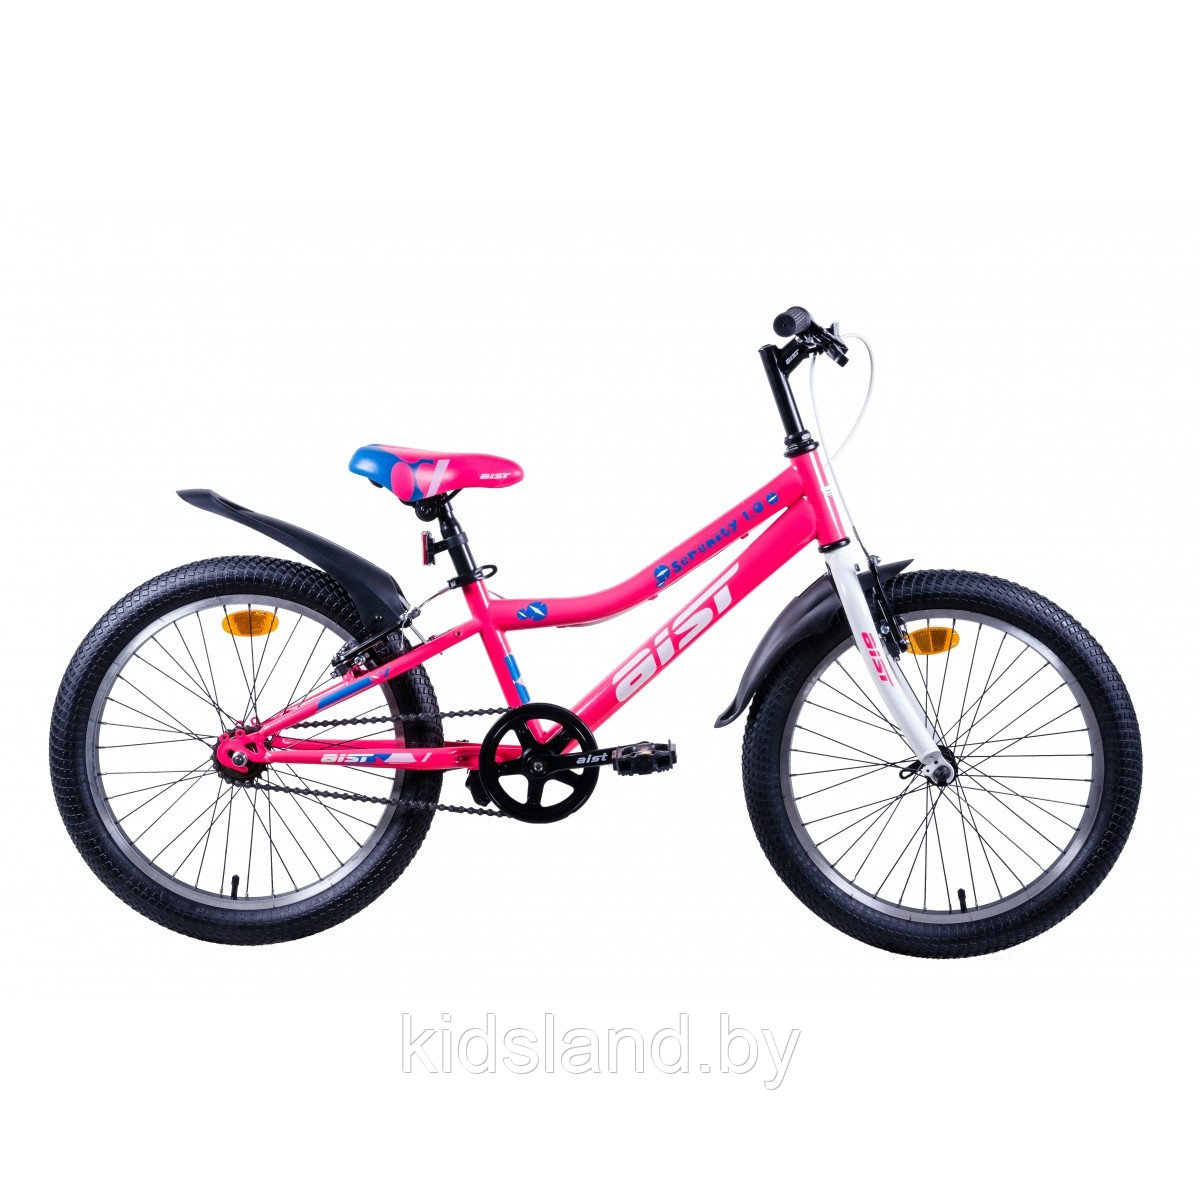 Велосипед Aist Serenity 20 1.0"  (розовый), фото 1